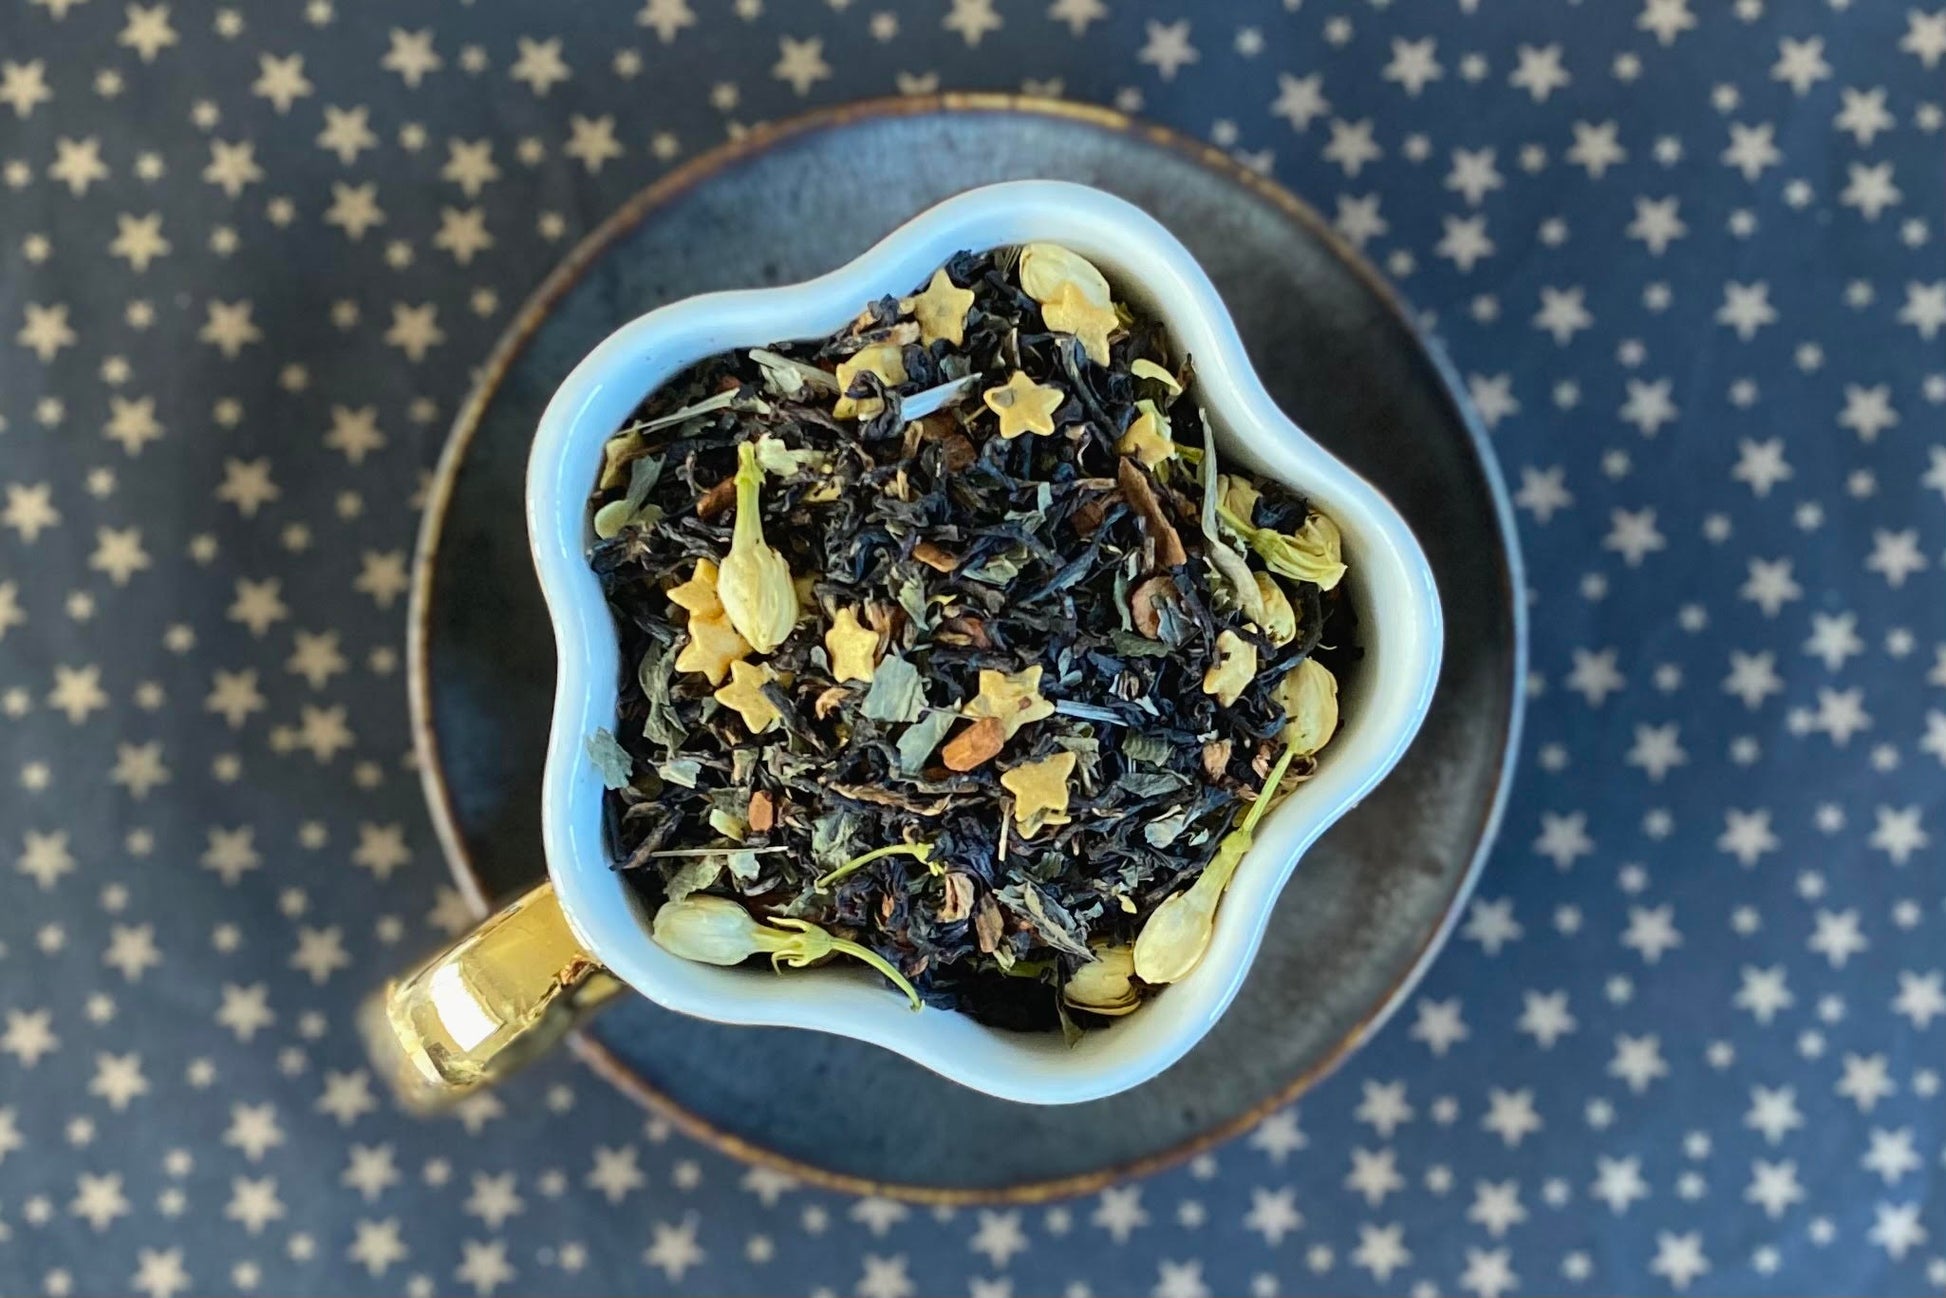 star shaped teacup full of tea leaf, star sprinkles, and jasmine flowers